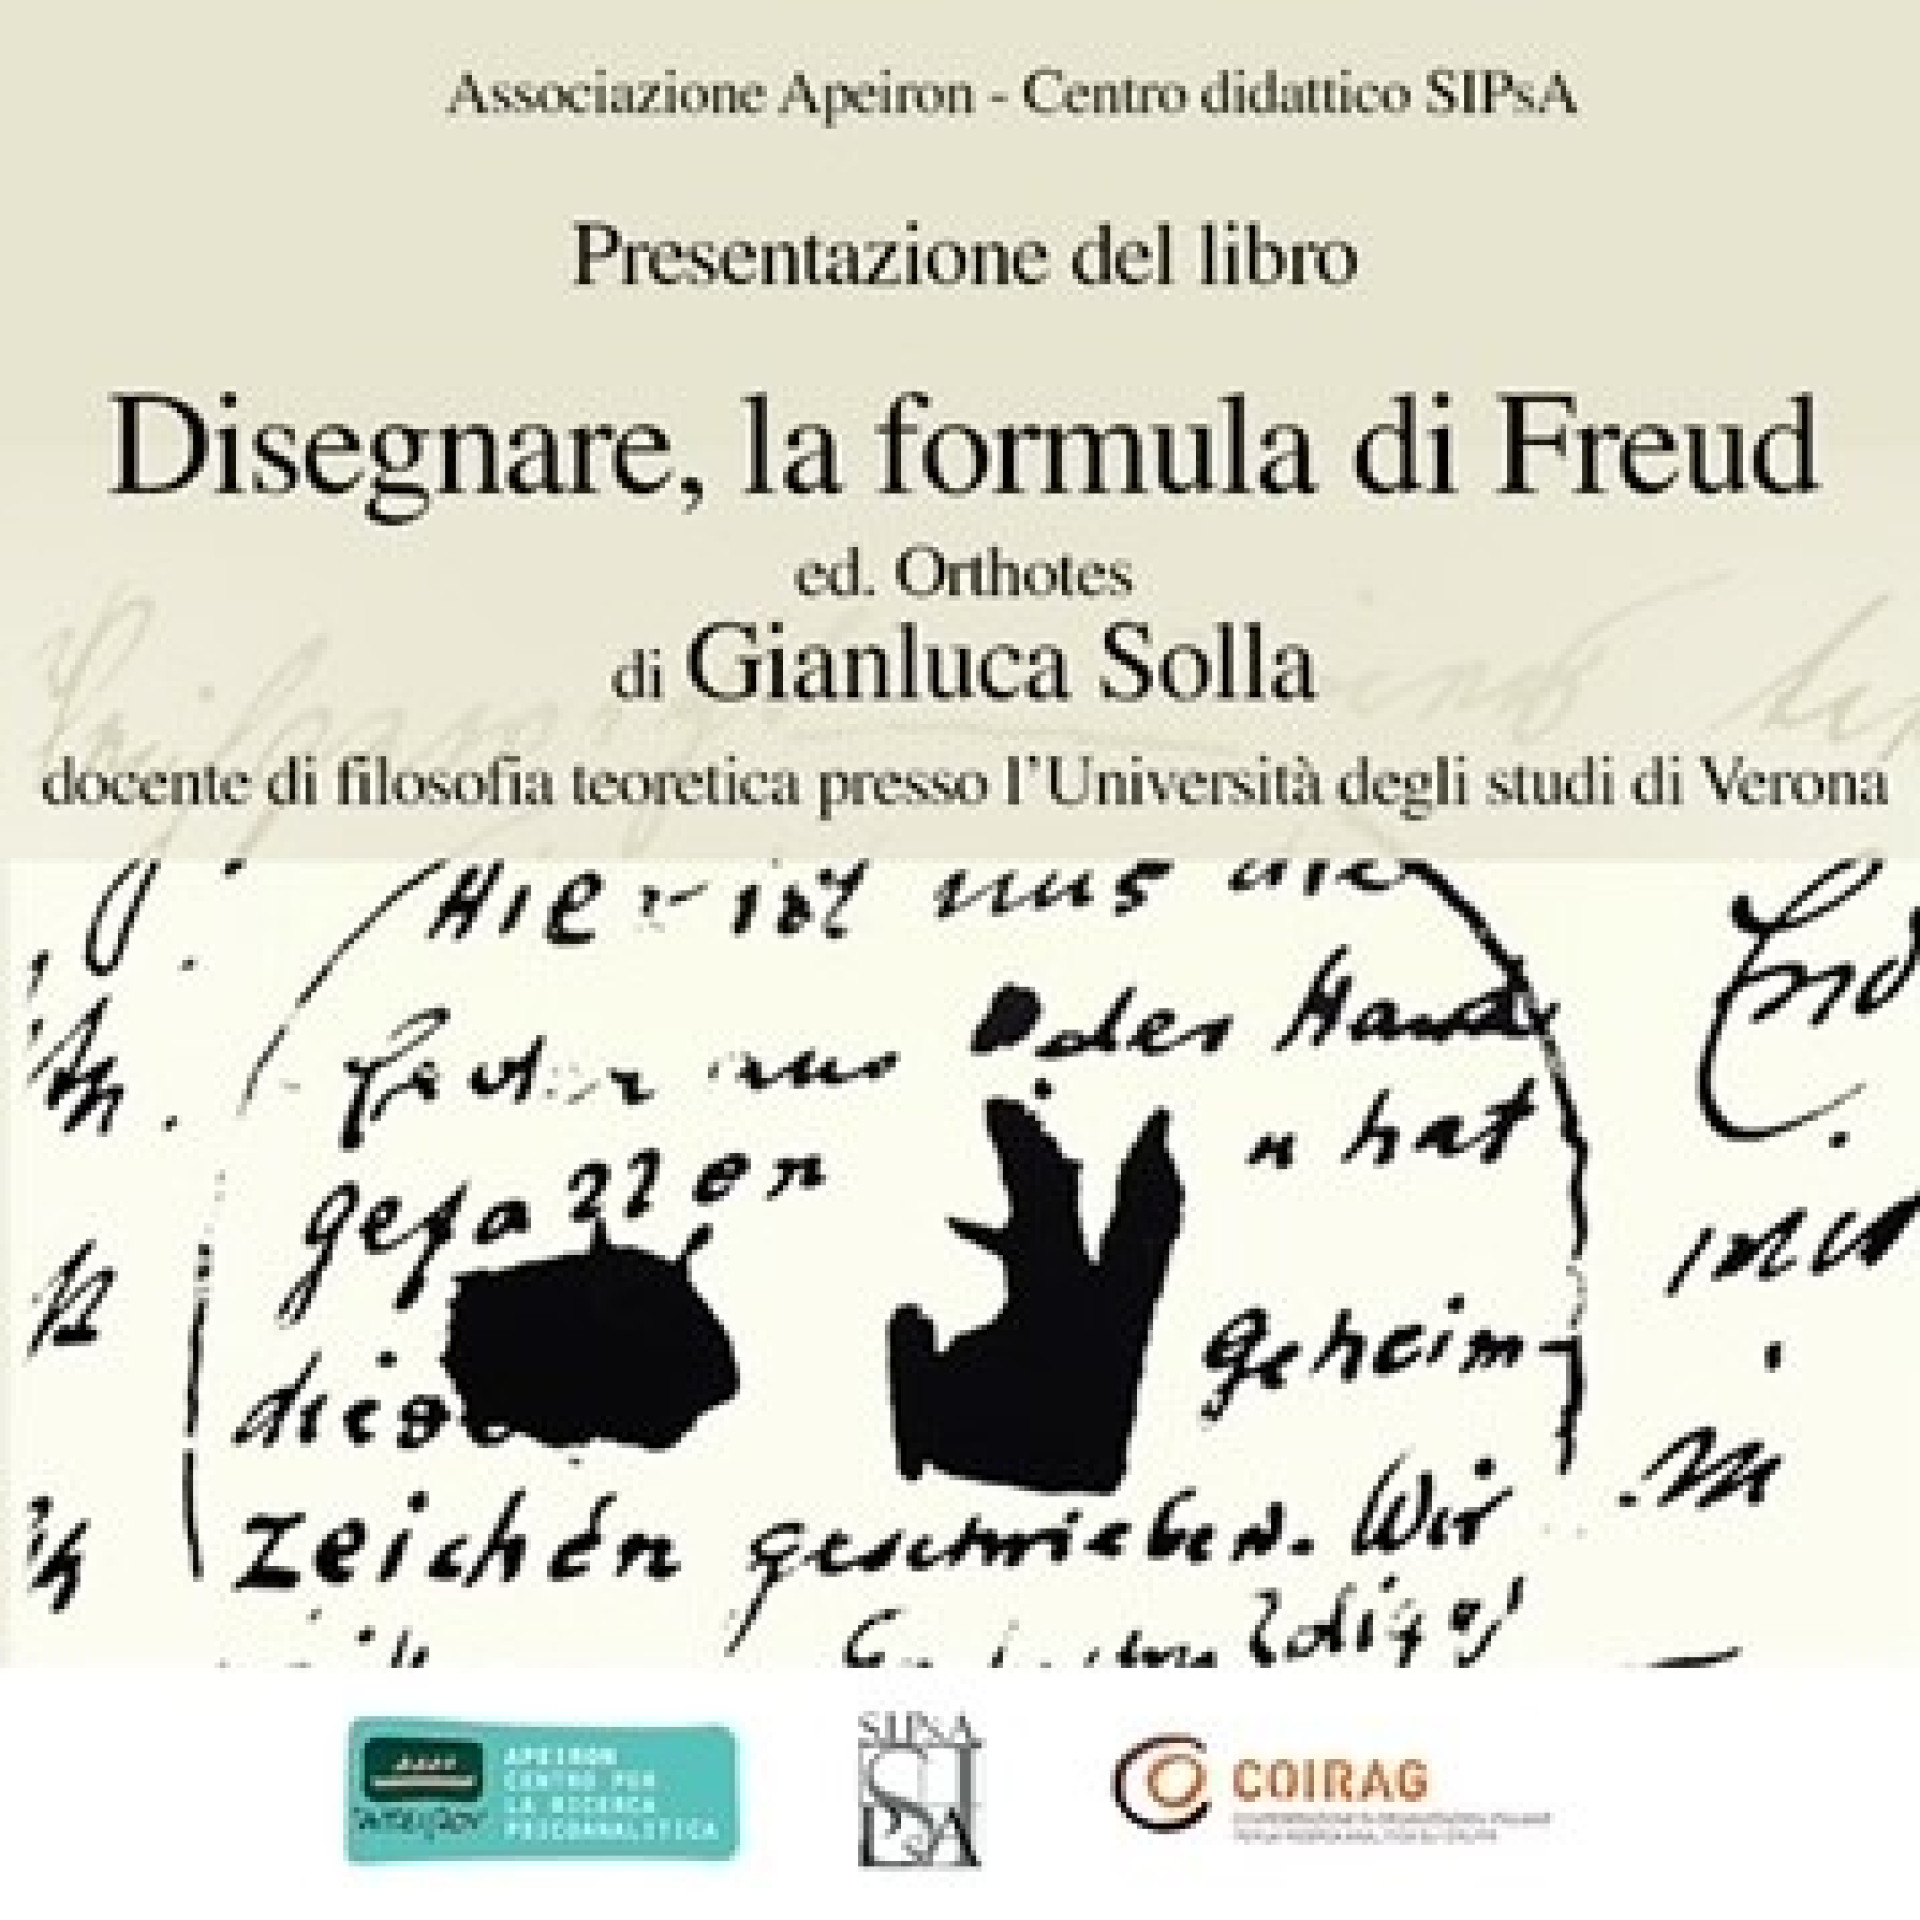 Presentazione del libro: "Disegnare, la formula di Freud" di Gianluca Solla.